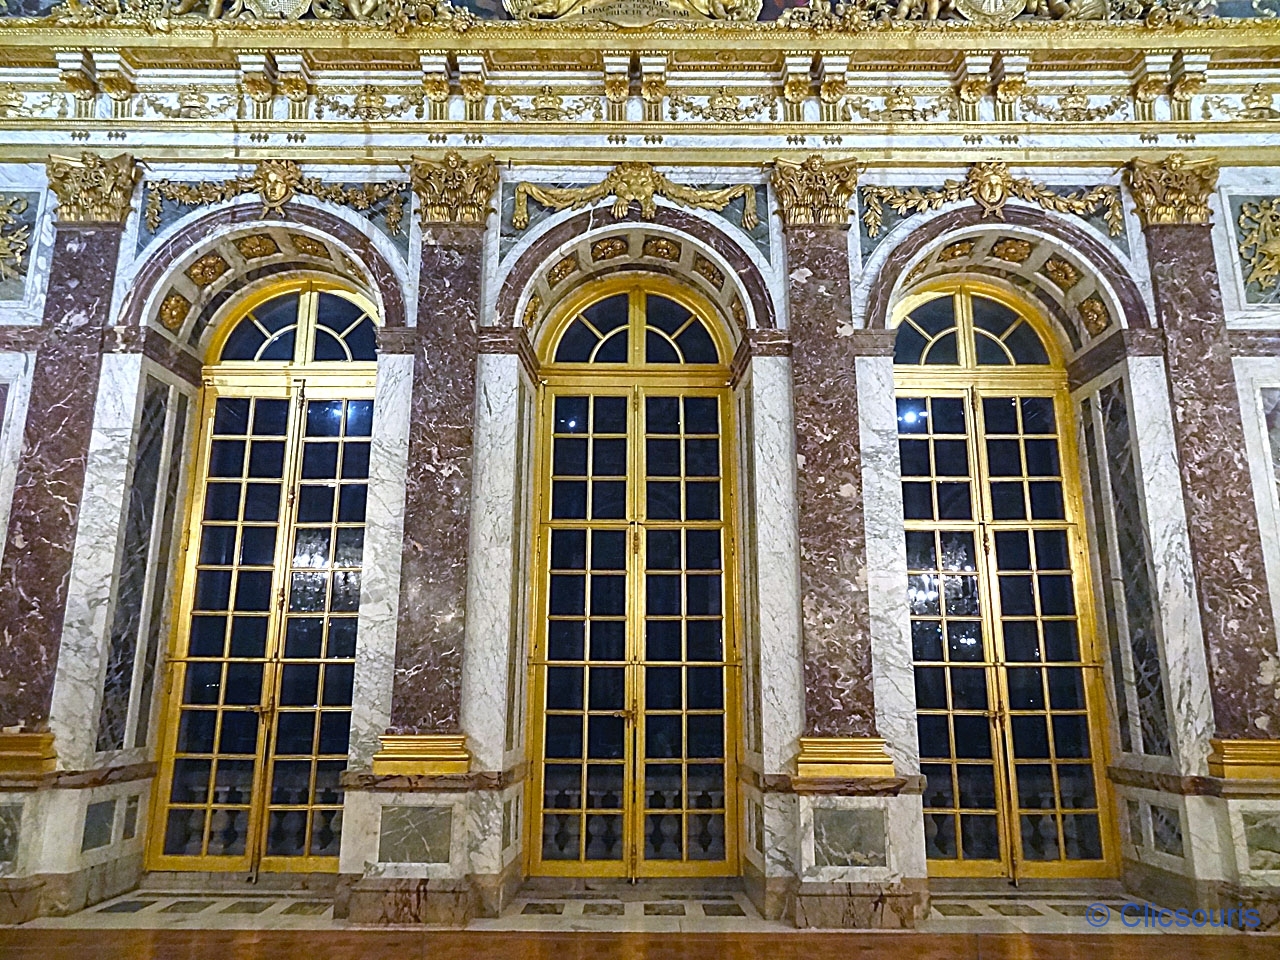 Château de Versailles la nuit Galerie des Glaces